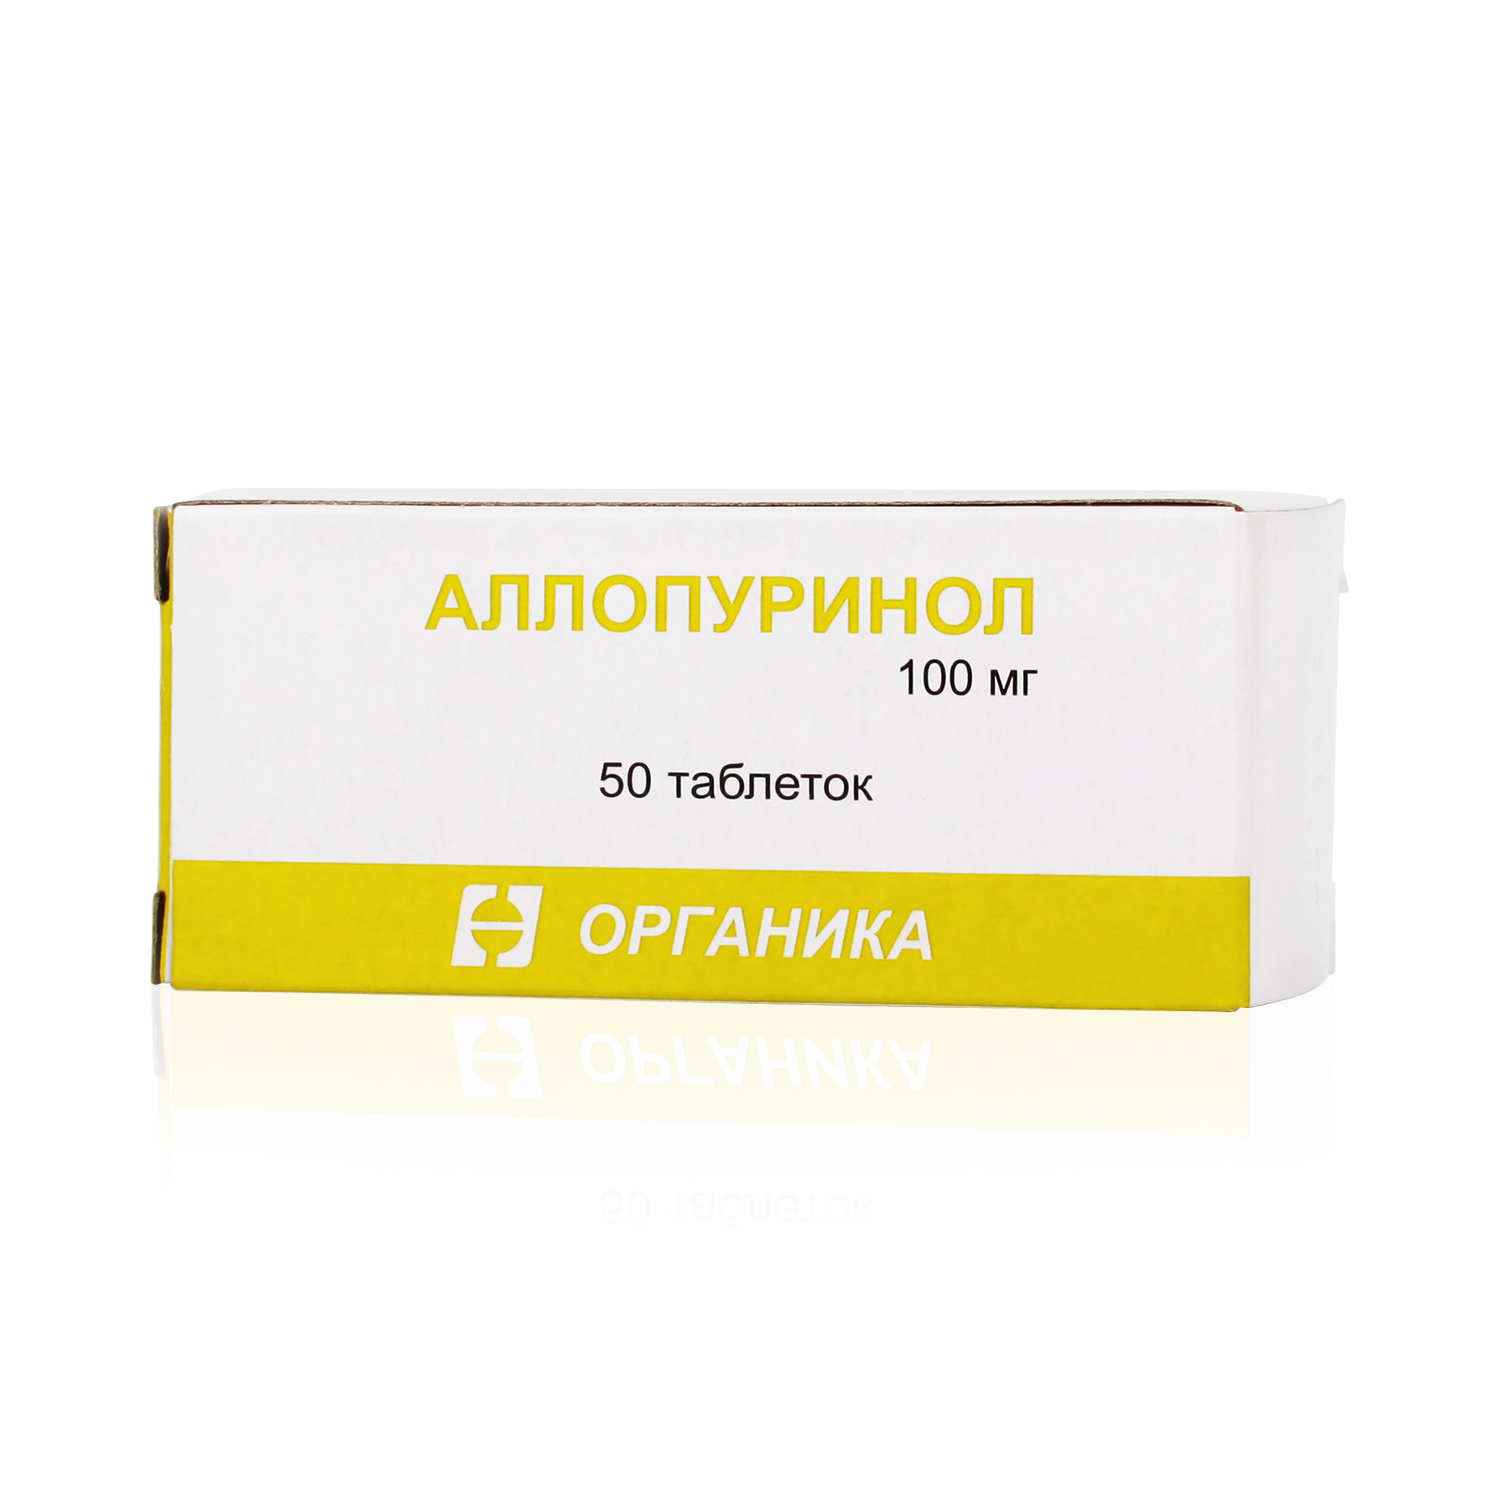 Аллопуринол таблетки 100 инструкция по применению взрослым. Аллопуринол 300 мг. Аллопуринол 100 мг органика. Аллопуринол 100 миллиграмм. Аллопуринол 50мг.